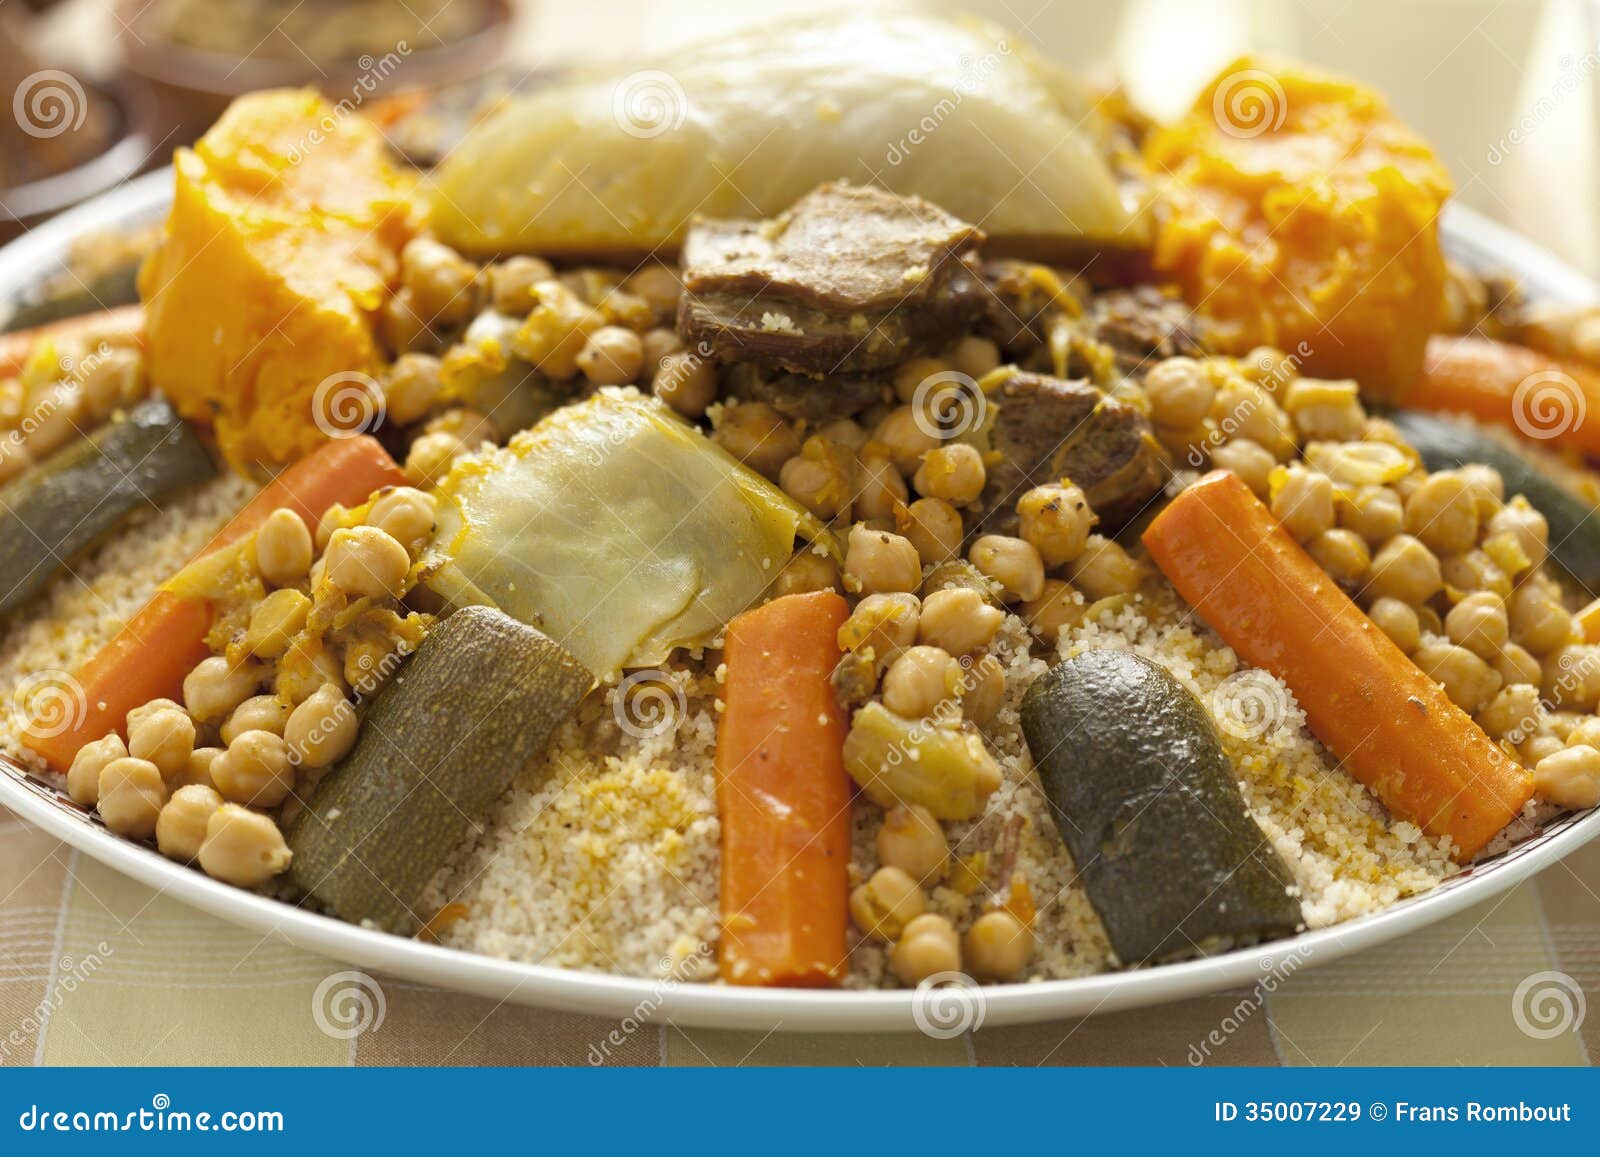 Plat marocain de couscous image stock. Image du traditionnel